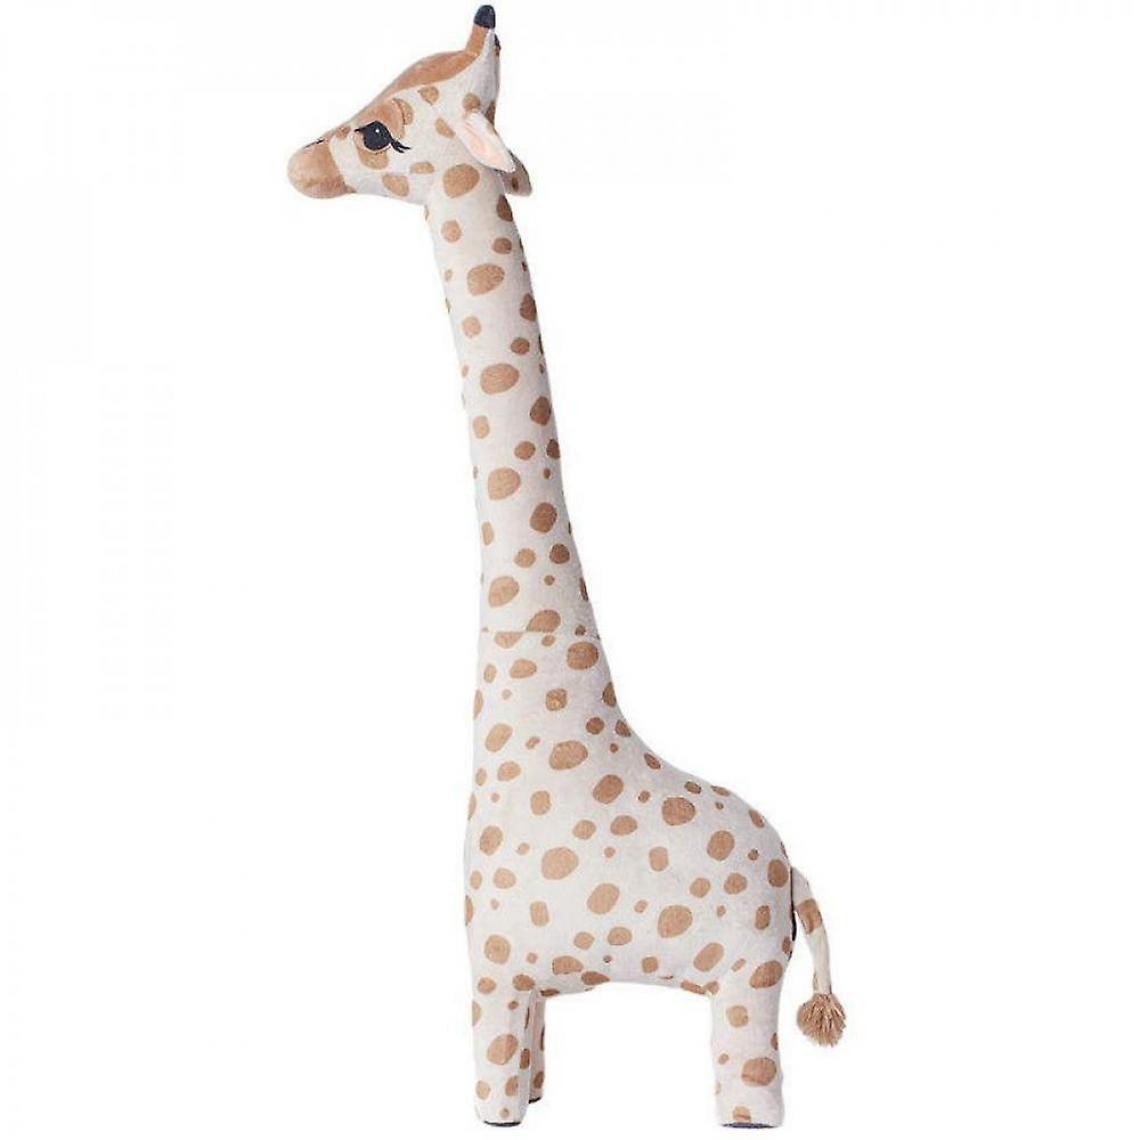 Universal - Girafe en peluche géante poupée molle cadeau enfant peluche animal (40 cm) - Doudous